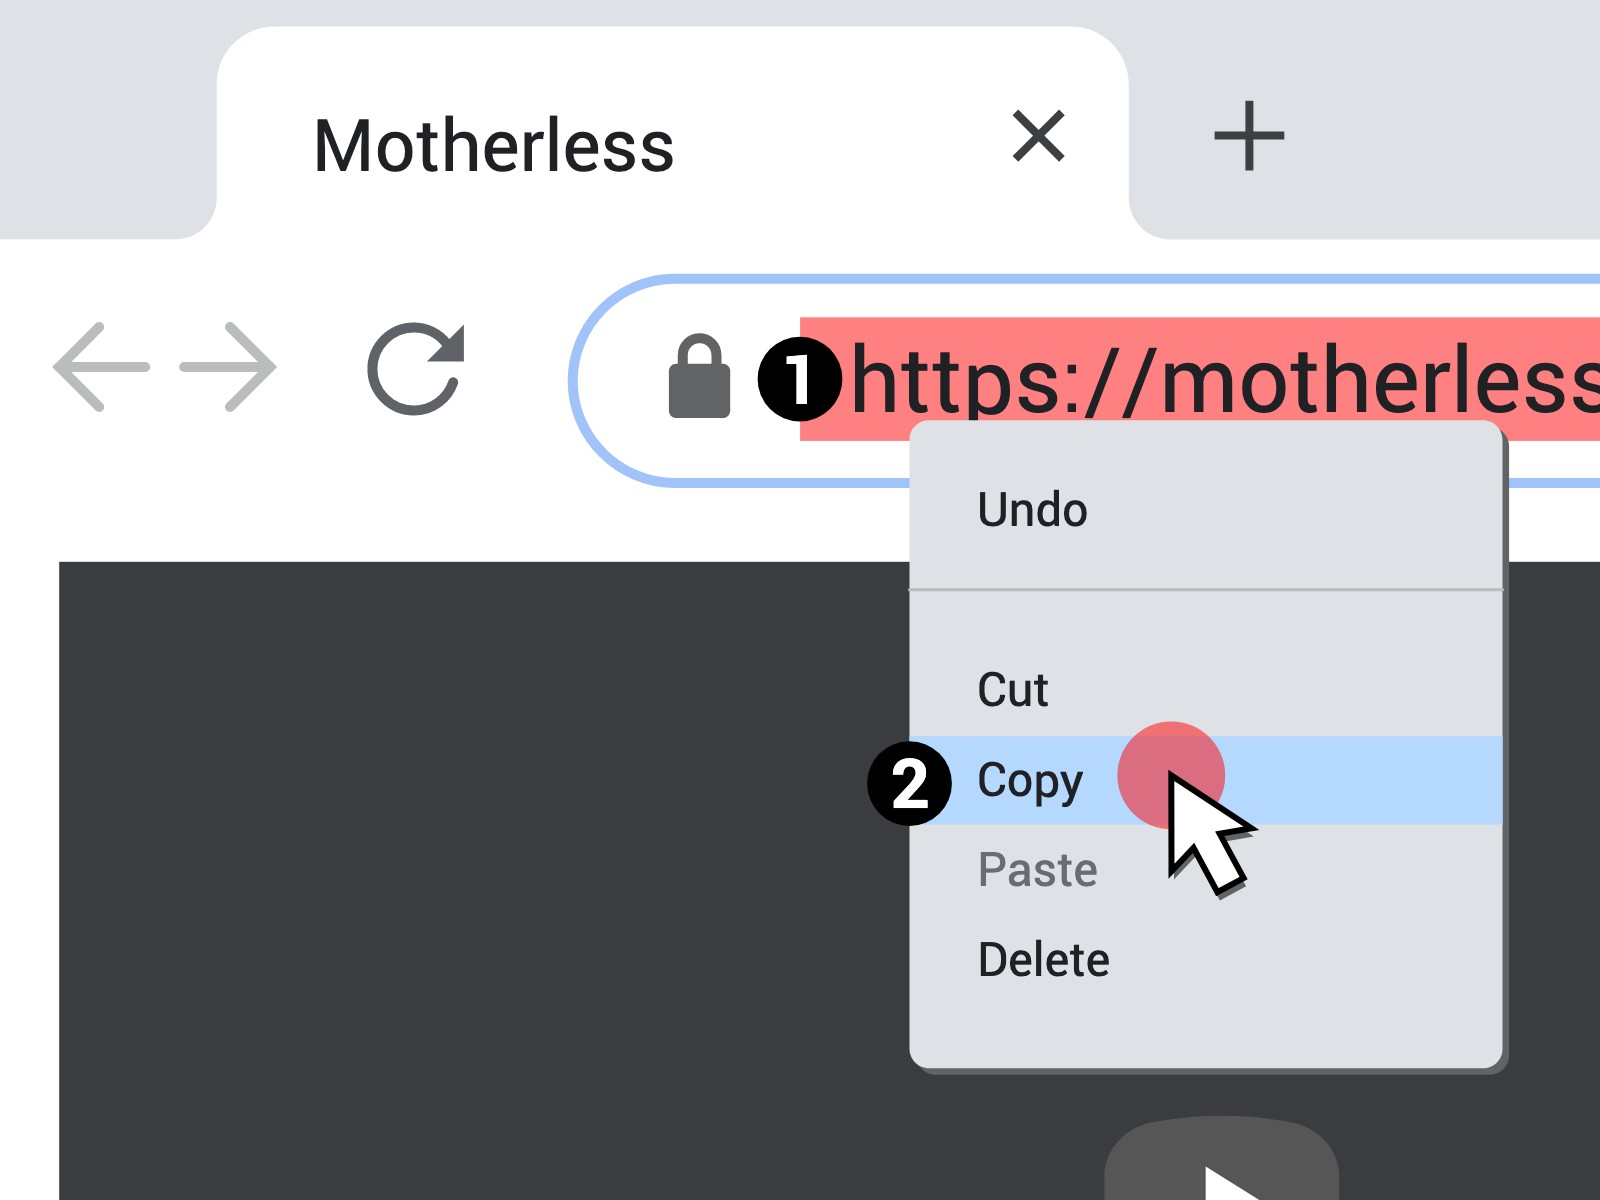 Download motherless vids